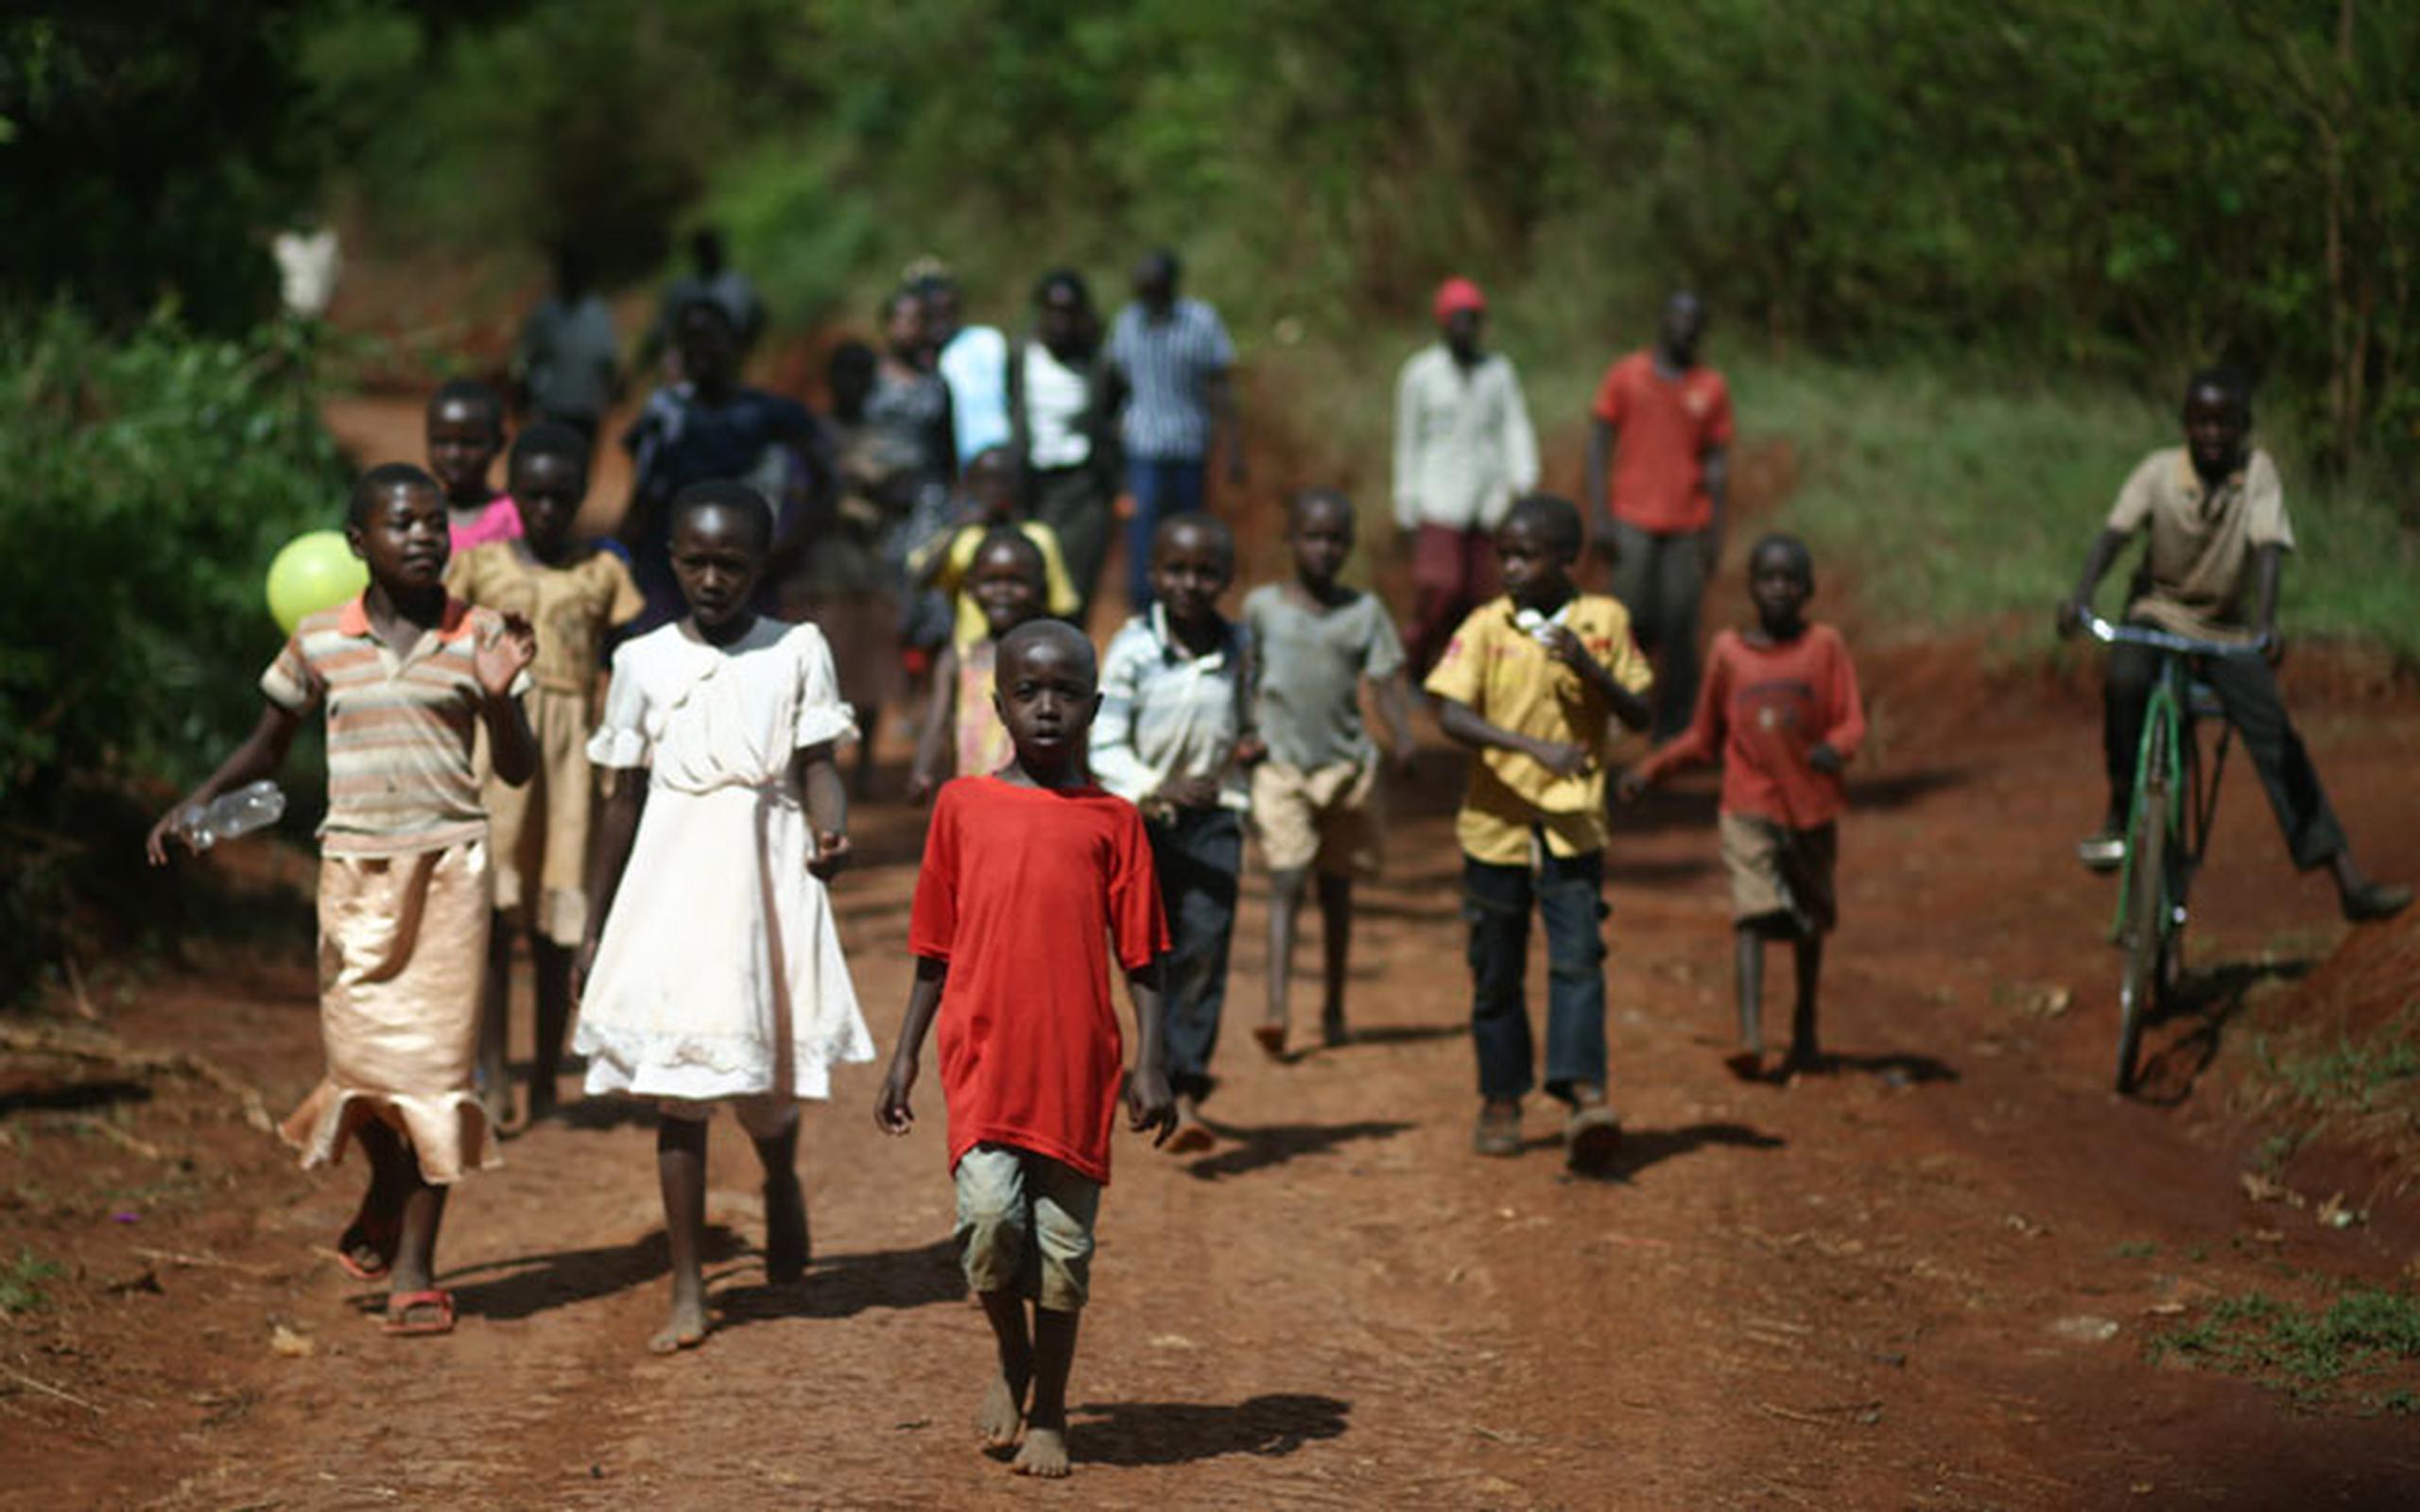 La población en situación de pobreza en Kenya incluye a los niños huérfanos a causa de padres que murieron por enfermedades como el VIH/Sida. (xavier.araujo@gfrmedia.com)